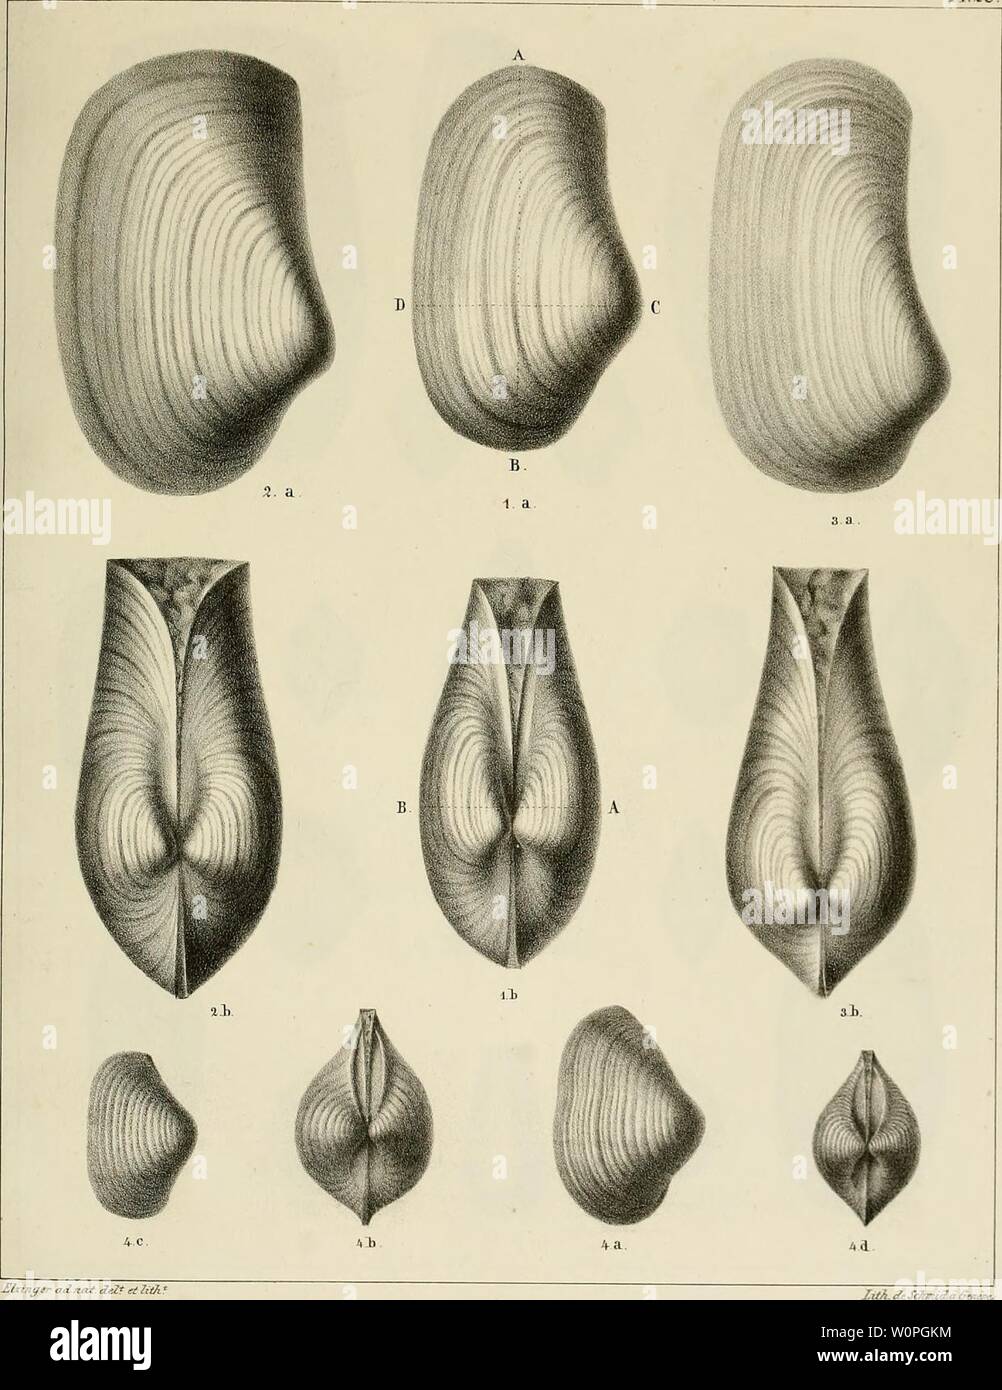 Archive image from page 62 of Description des mollusques fossiles qui. Description des mollusques fossiles qui se trouvent dans les grès verts des environs de Genève descriptiondesmo01pict Year: 1847-1853  P1.28.    Bixtner- adnat deZt et 7iih îig 1. Tanopsea acutisnlcata. Tig. . P. plicata rig. 4 T. Sabaudiana. n 3 P. Ehodani Stock Photo